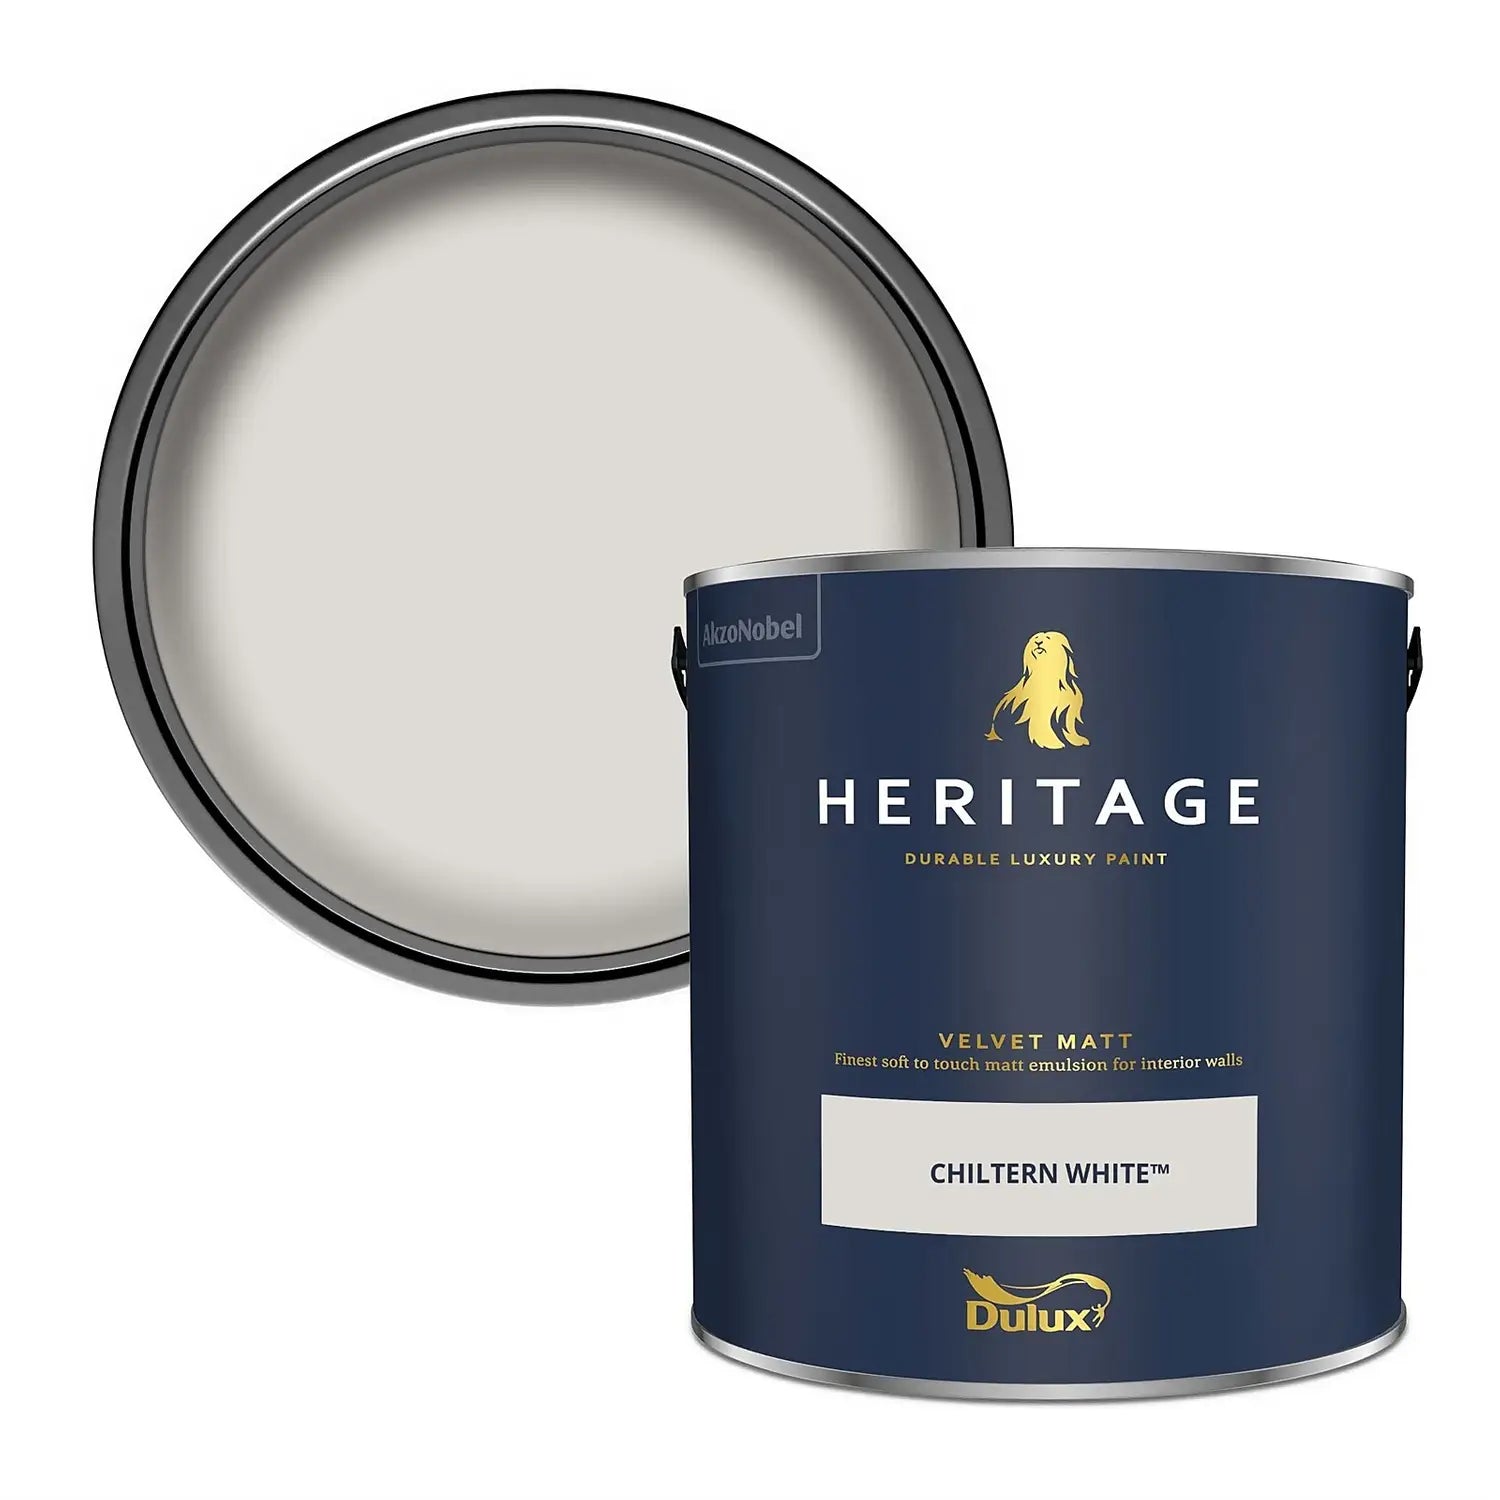 Chiltern White - Dulux Heritage Paint Colour - Paint Online